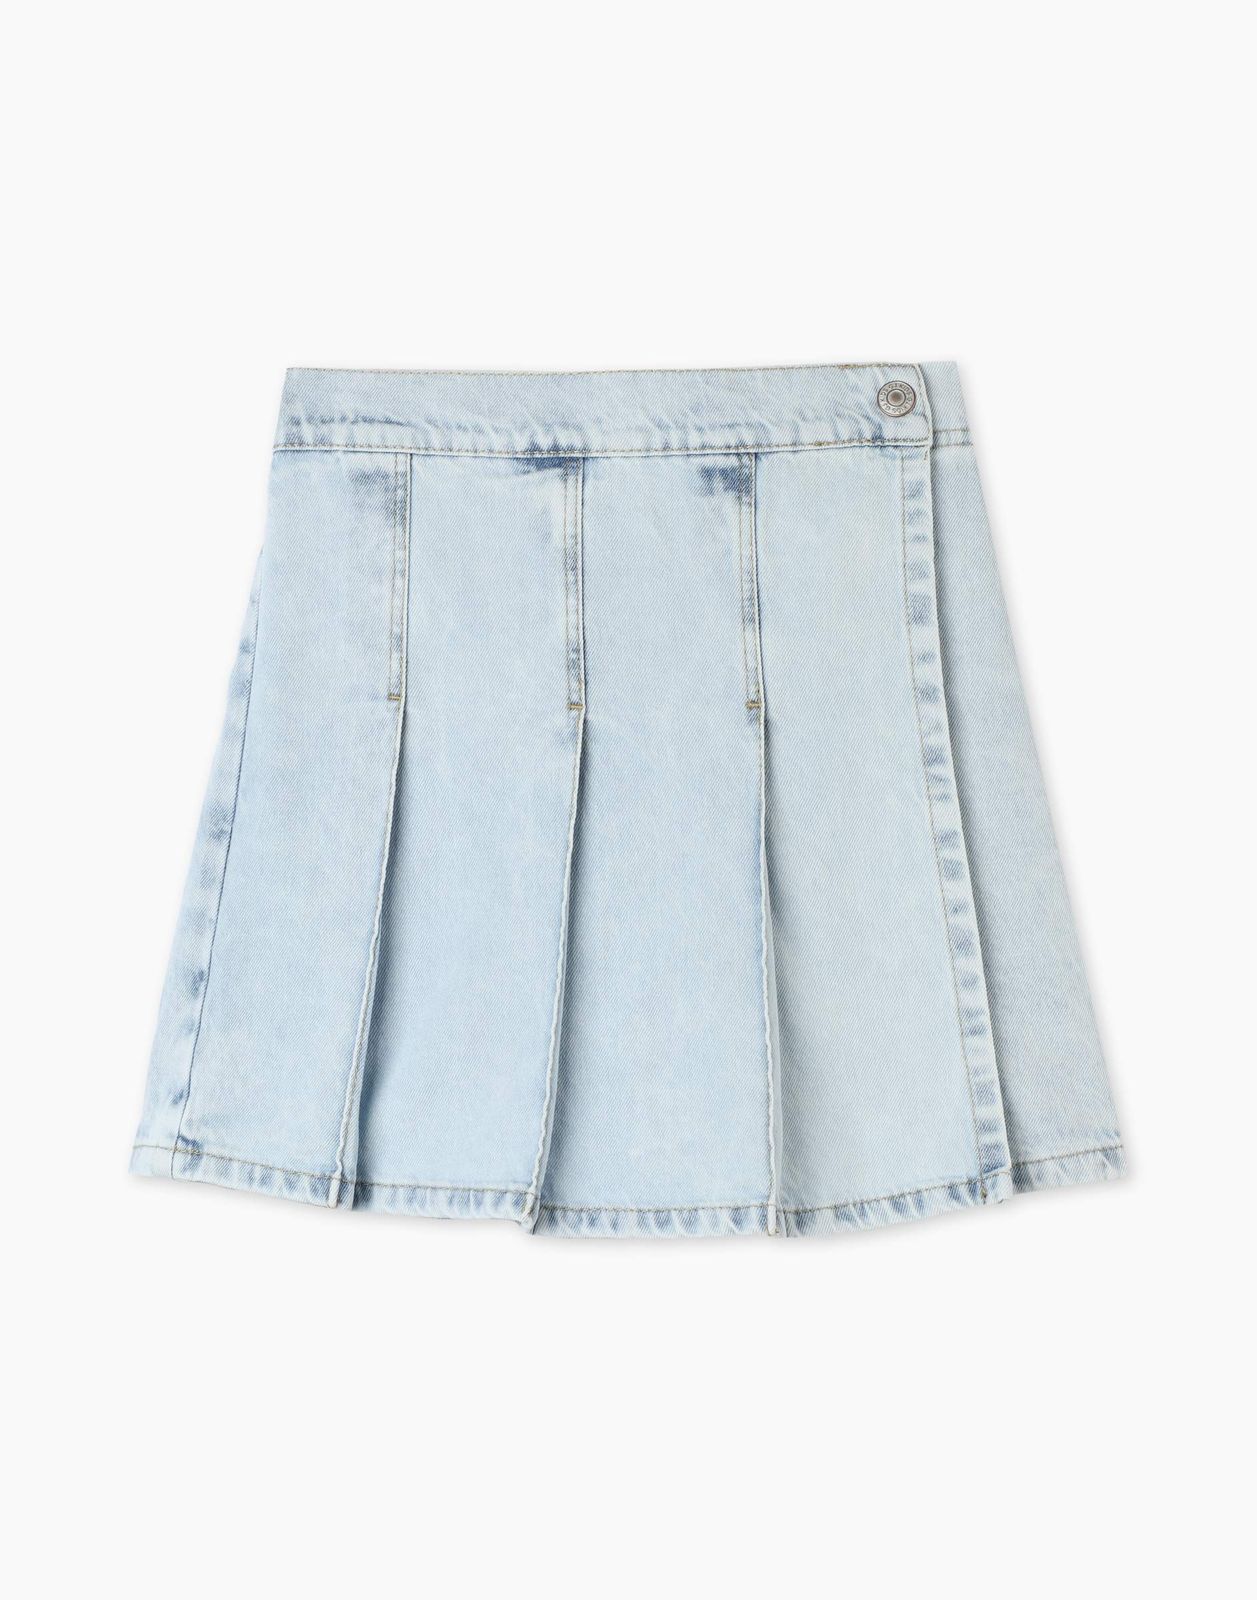 Джинсовая юбка-шорты Gloria Jeans GSK018325 8-10л/134-140 для девочки асимметричная джинсовая юбка шорты